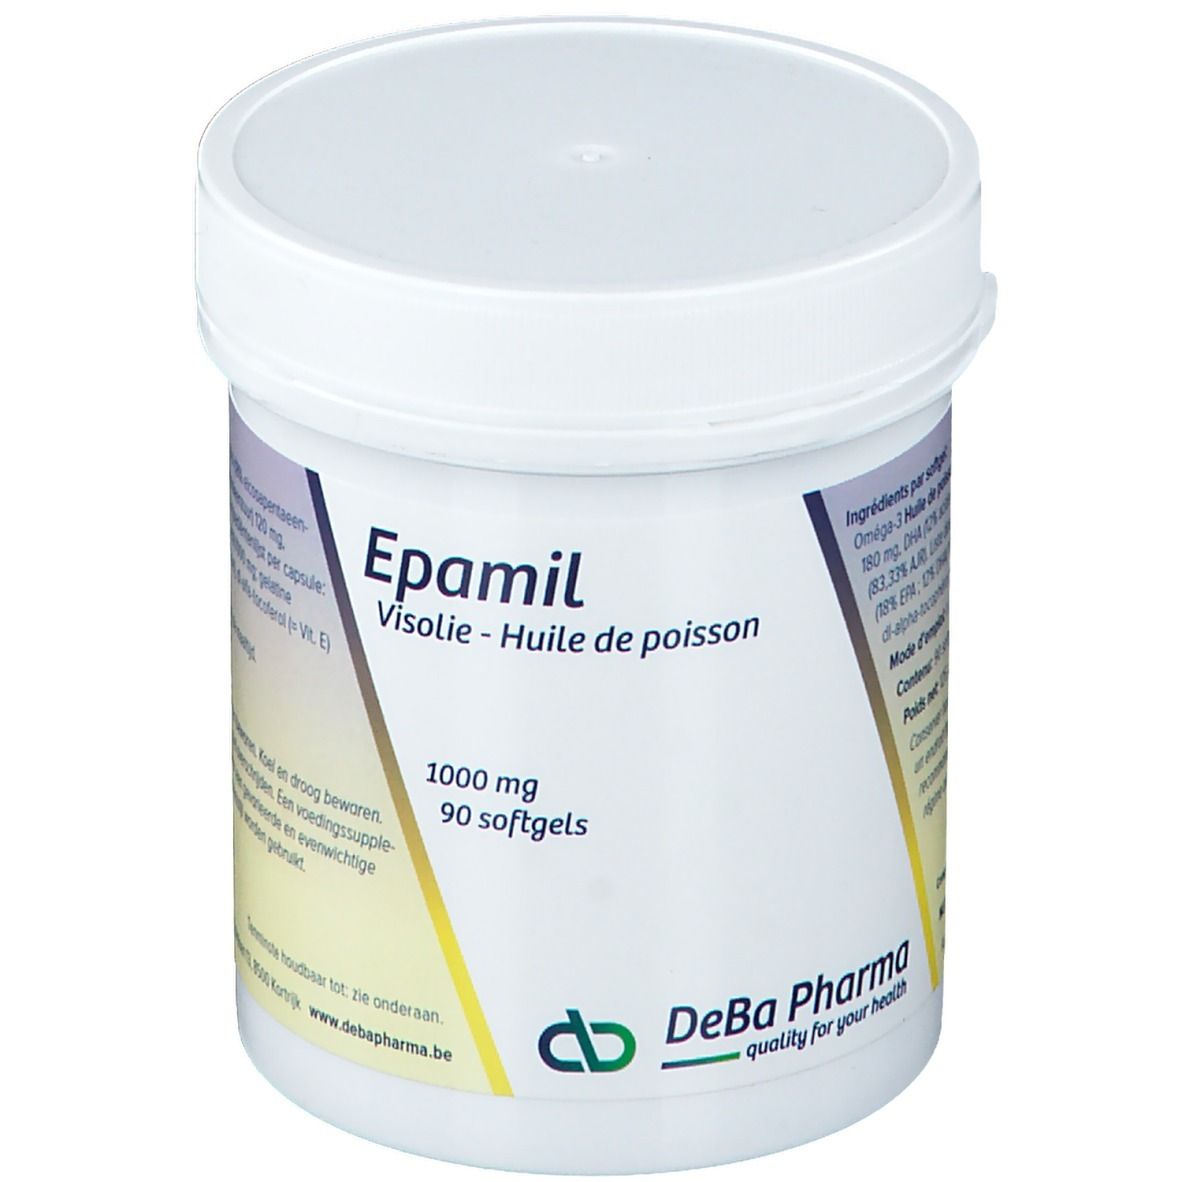 DeBa Pharma Epamil 1000mg